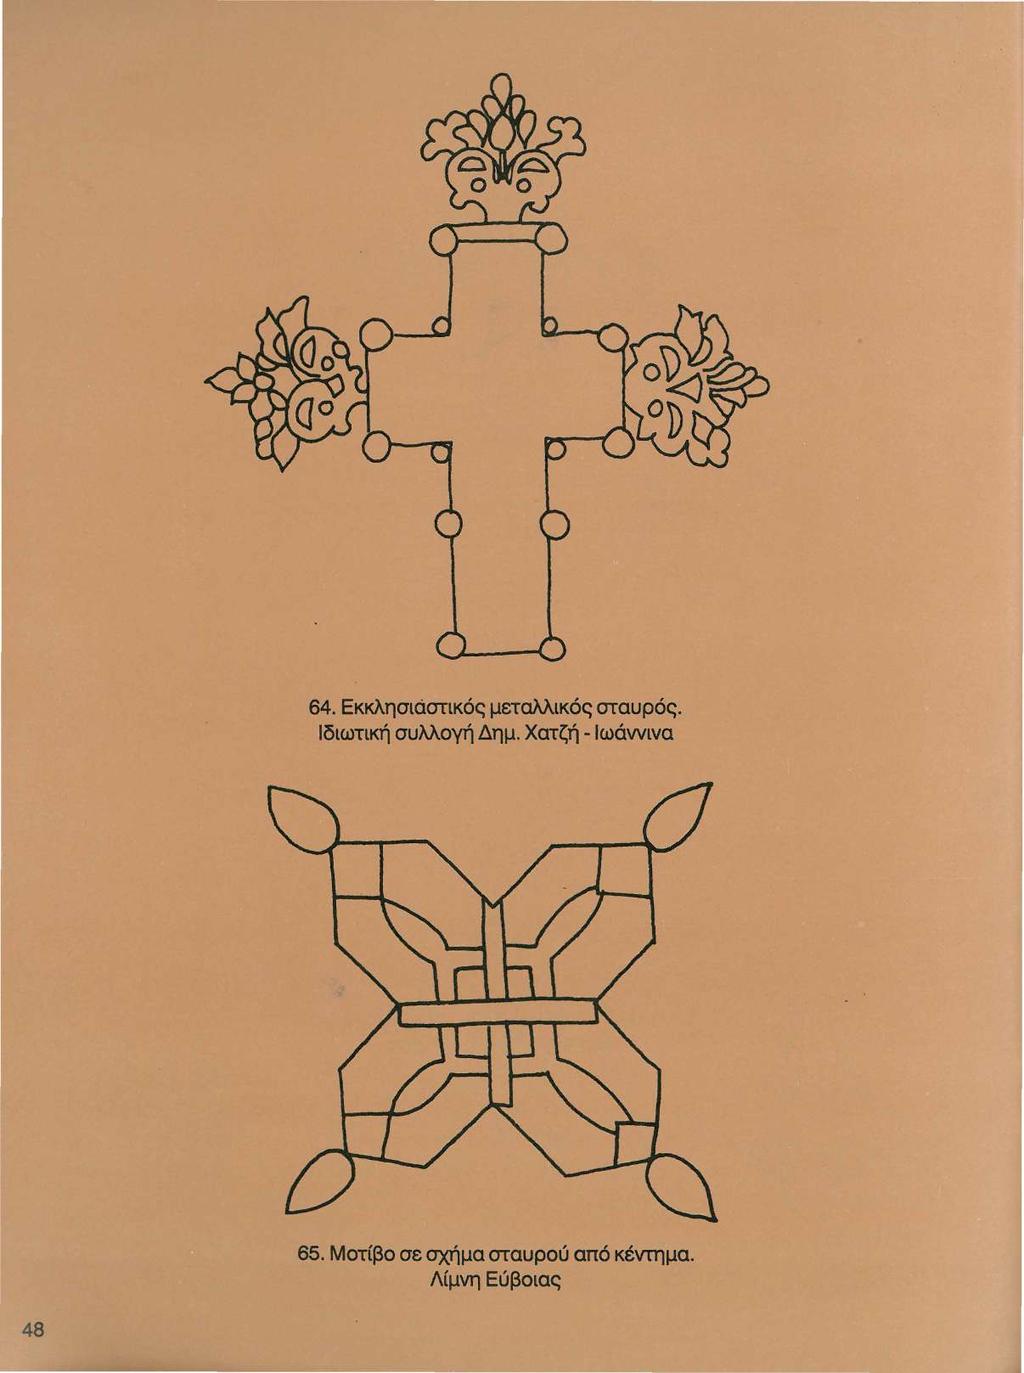 64. Εκκλησιάστικός μεταλλικός σταυρός. Ιδιωτική συλλογή Δημ.